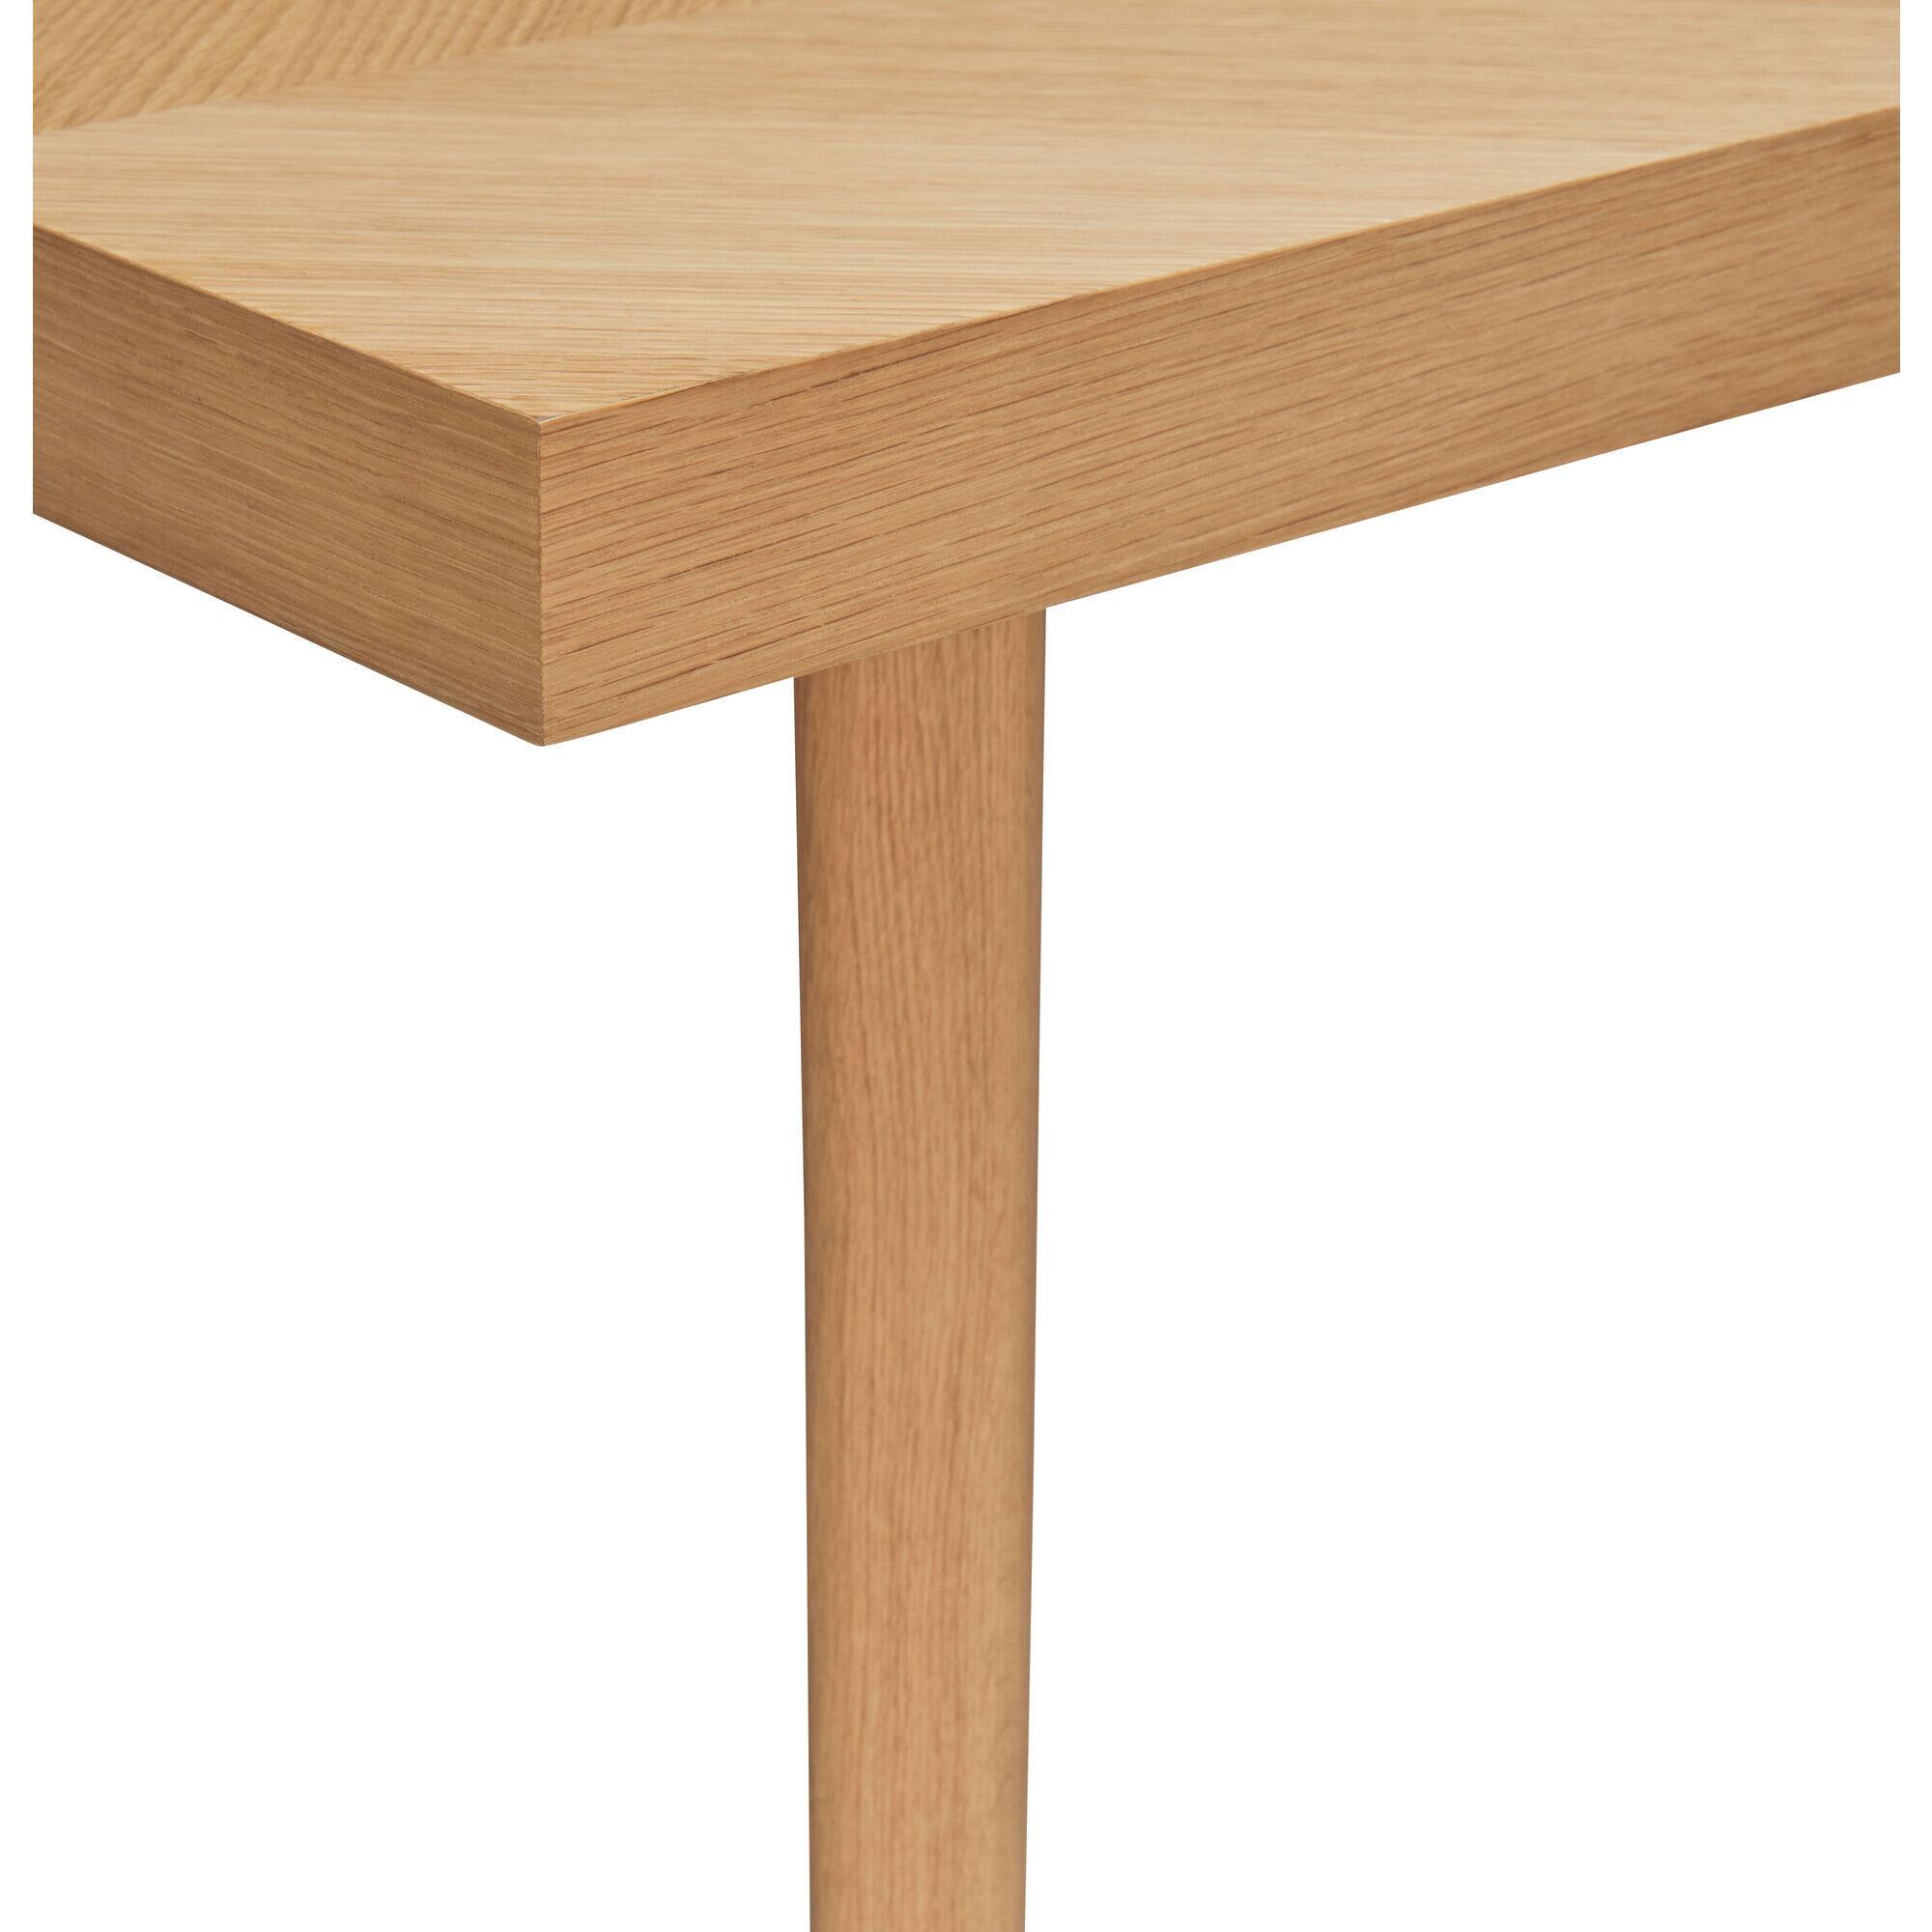  Herringbone Spisebord Lille - Natur fra Hübsch Interiør i MDF, Egetræsfiner, Egetræ (Varenr: 881612)